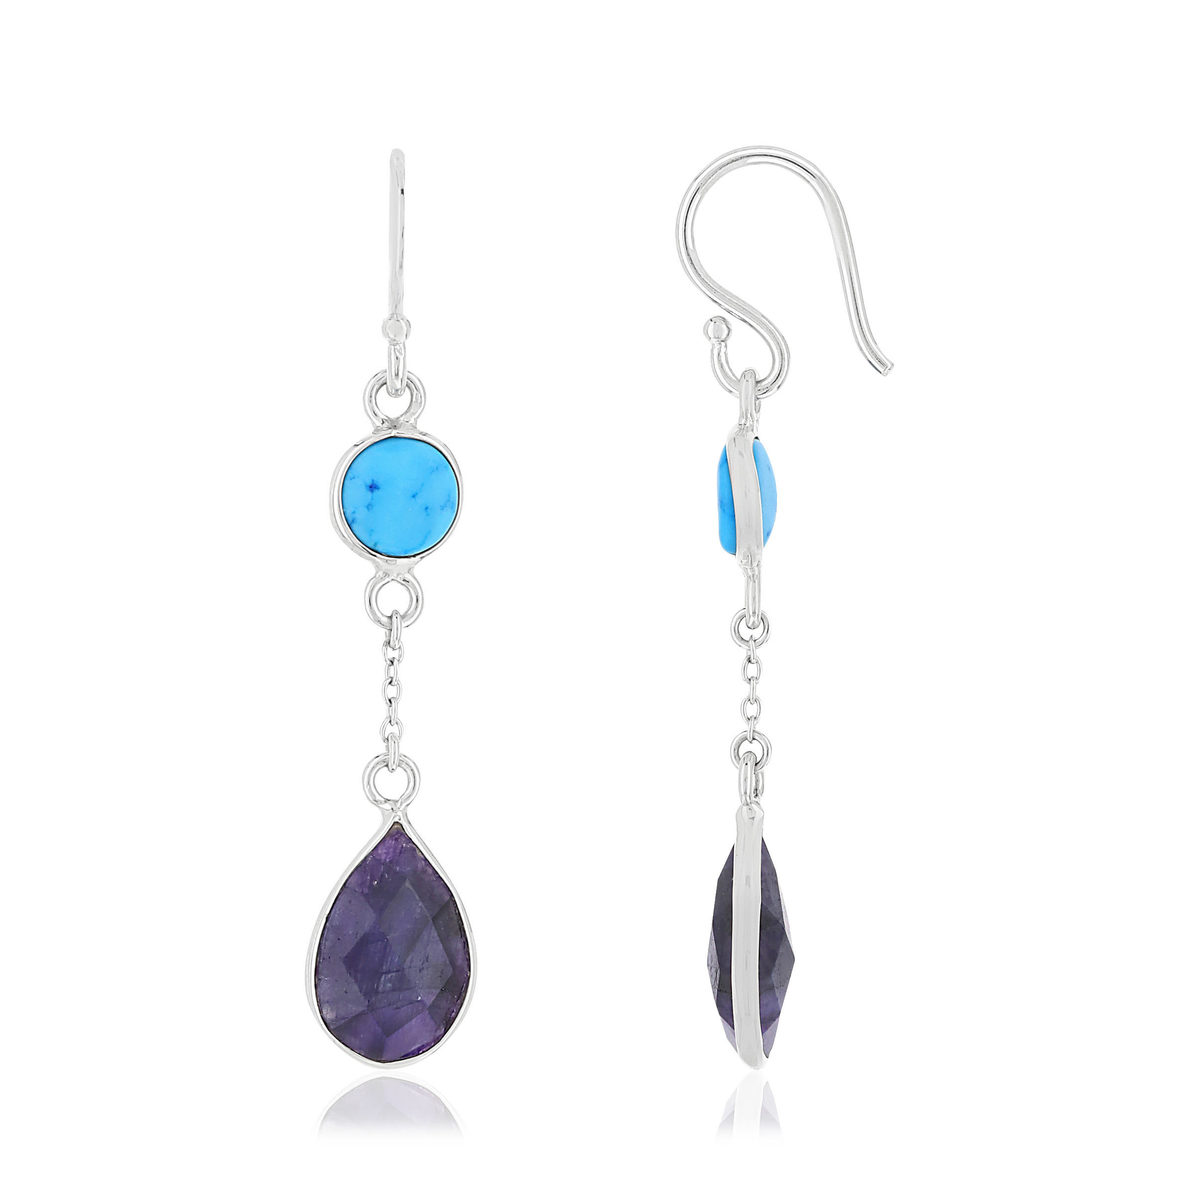 Boucles d'oreilles argent 925 pendants howlites et lapis lazulis bleus